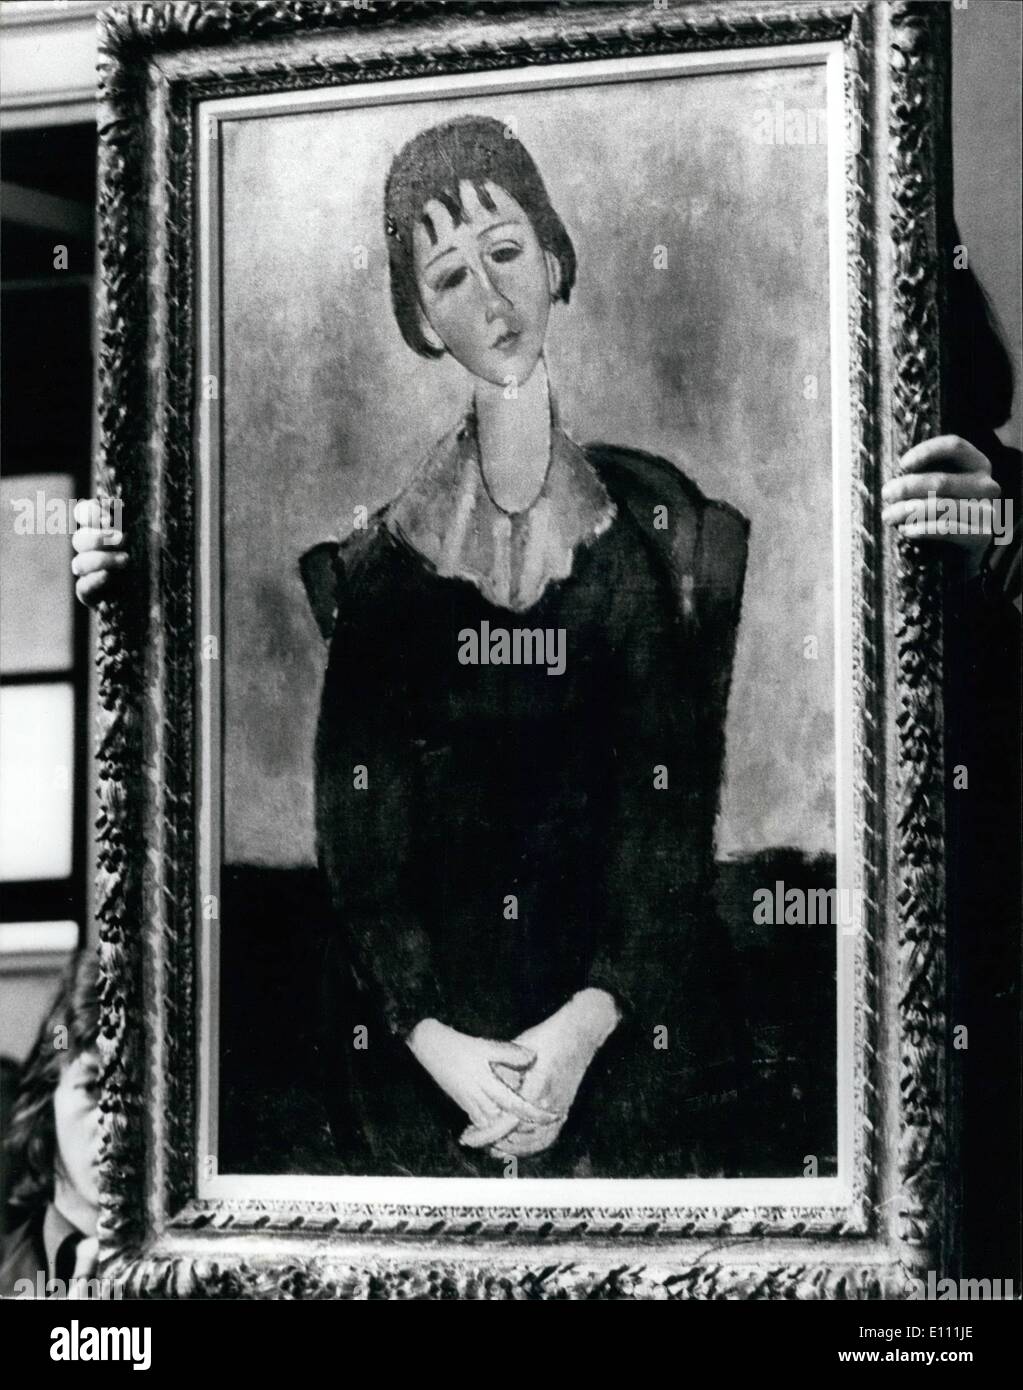 Avril 04, 1975 - Une peinture d'Amedeo Modigliani vendu chez Christie's pour 120 000 GNS : Lors d'une vente d'art impressionniste et moderne Peinture, dessin et sculpture à Christie's aujourd'hui, une peinture par Amedo Modigliani, appelé ''Fillette sur une chaise ; Huguette'', a été vendu pour 120 000 gns. Photo montre le tableau de Modigliani Amedo ''Fillette sur une chaise ; Huguette'', peint en 1918, a été vendue pour 120 000 guinées à Christie's aujourd'hui. Banque D'Images